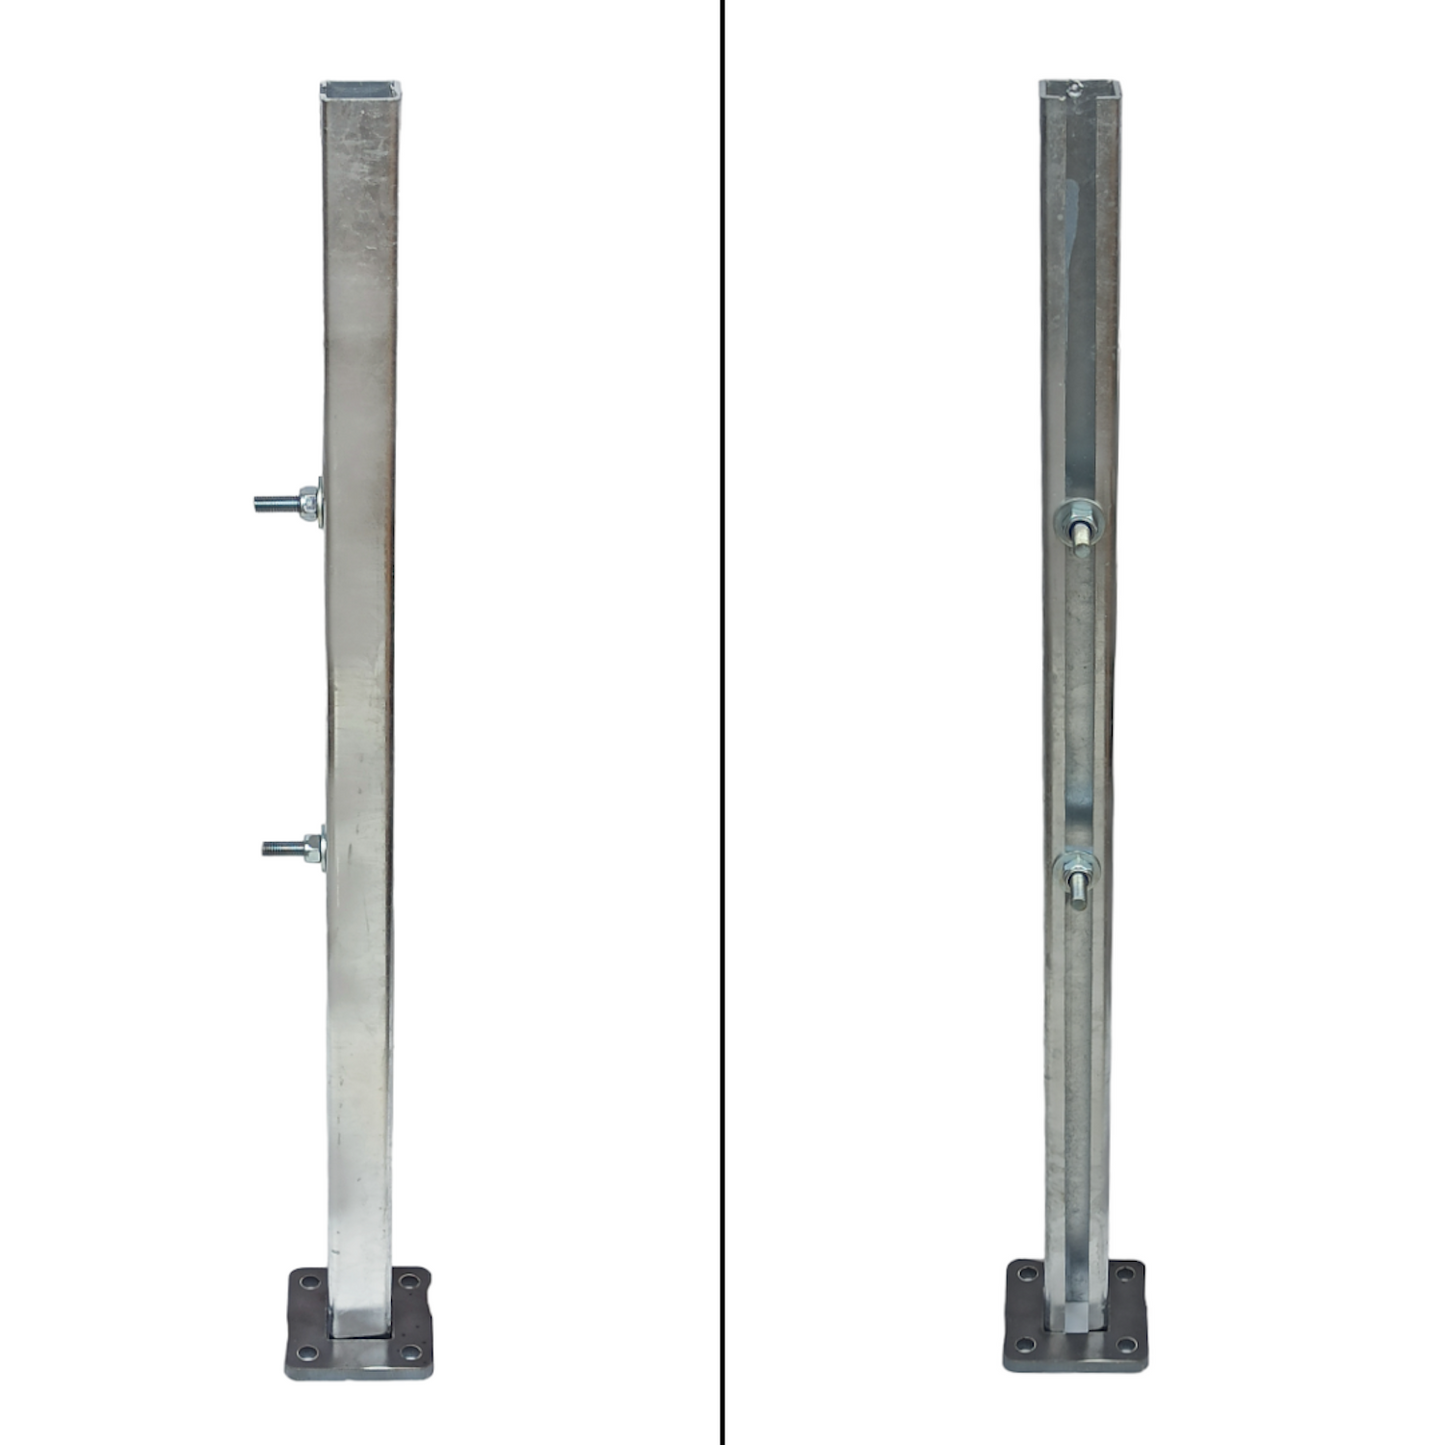 3 mm Dicke C-Profil Set als Universalpfosten, Stahlsäule, Tischbeine, Balkonsäule, Geländerpfosten, Zaunpfosten, Zaunsäule aus Stahl verzinkt